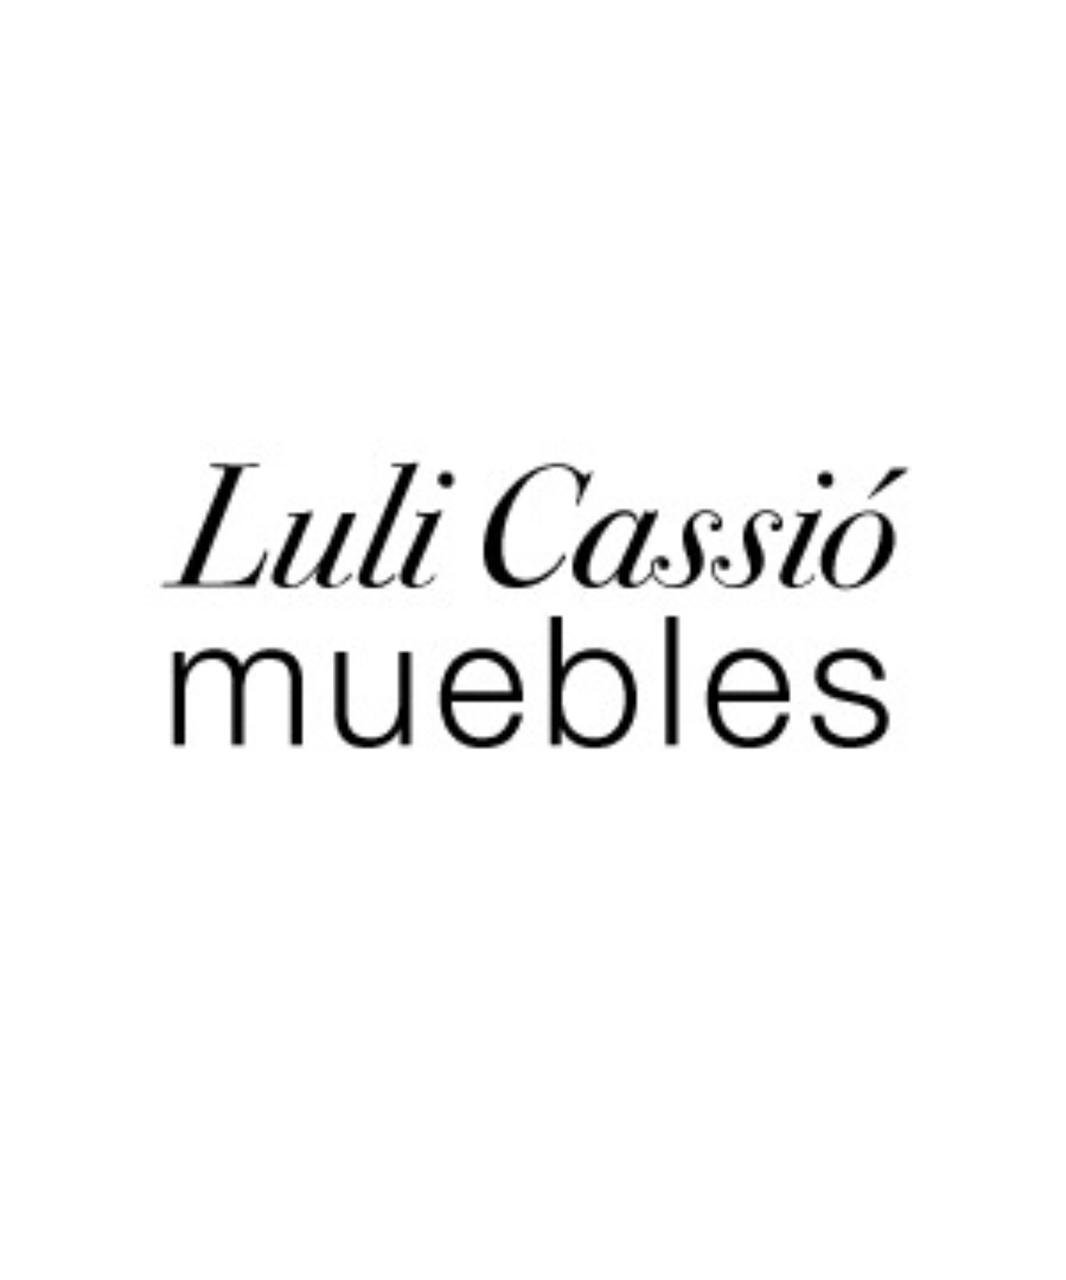 Luli Cassio Muebles s.r.l.